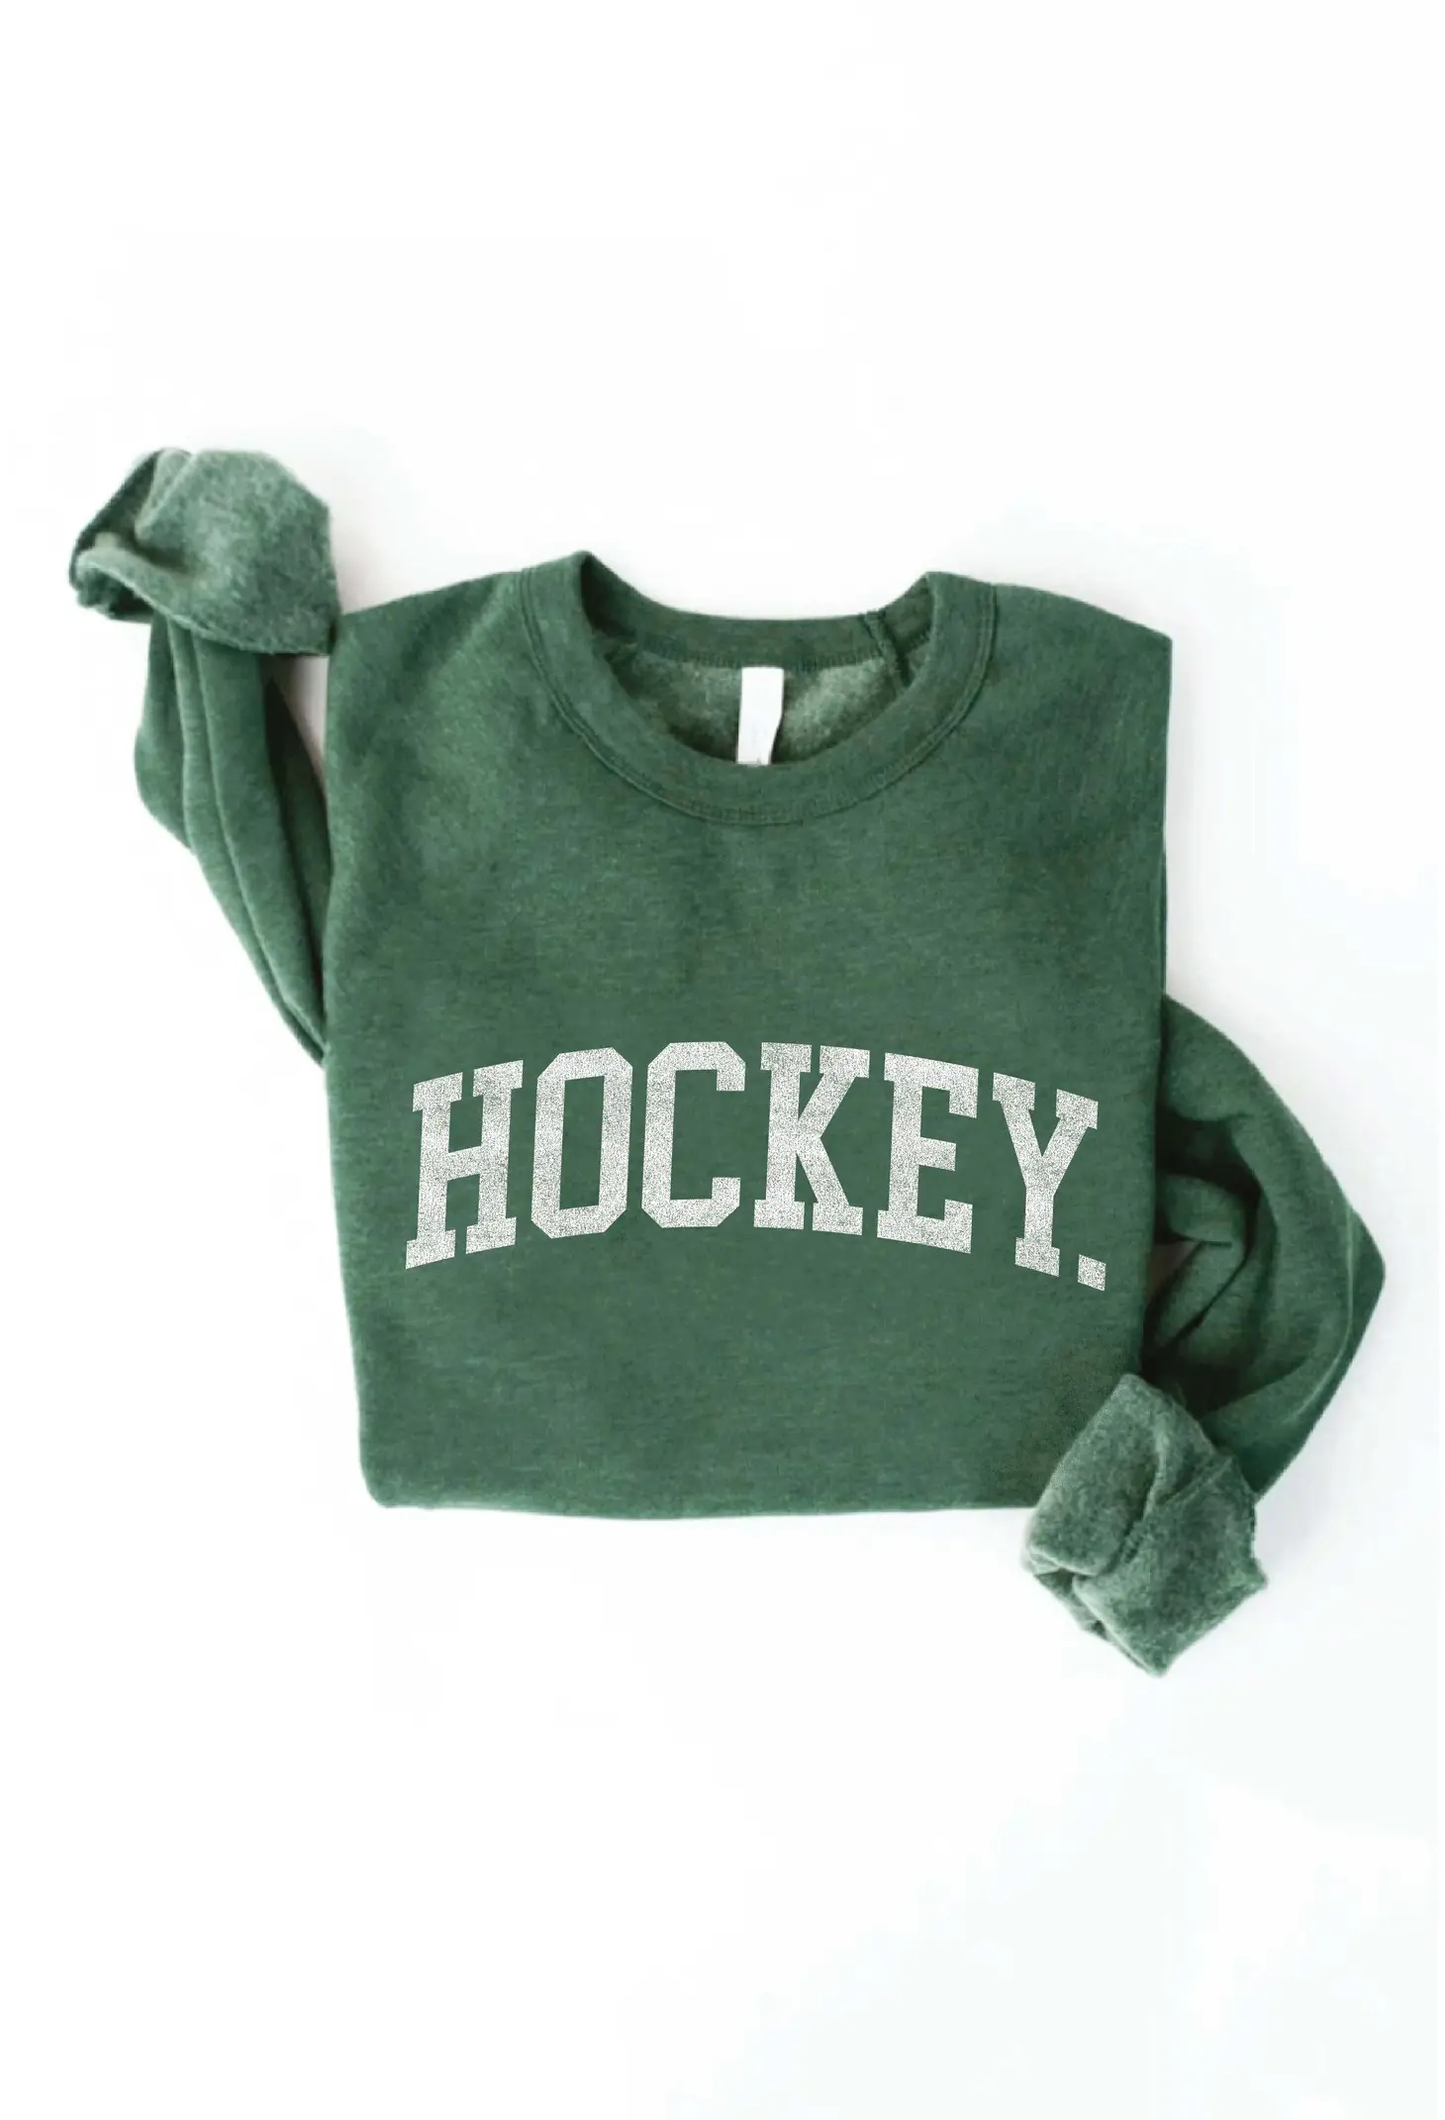 HOCKEY - Graphic Sweatshirt - Heather Forest